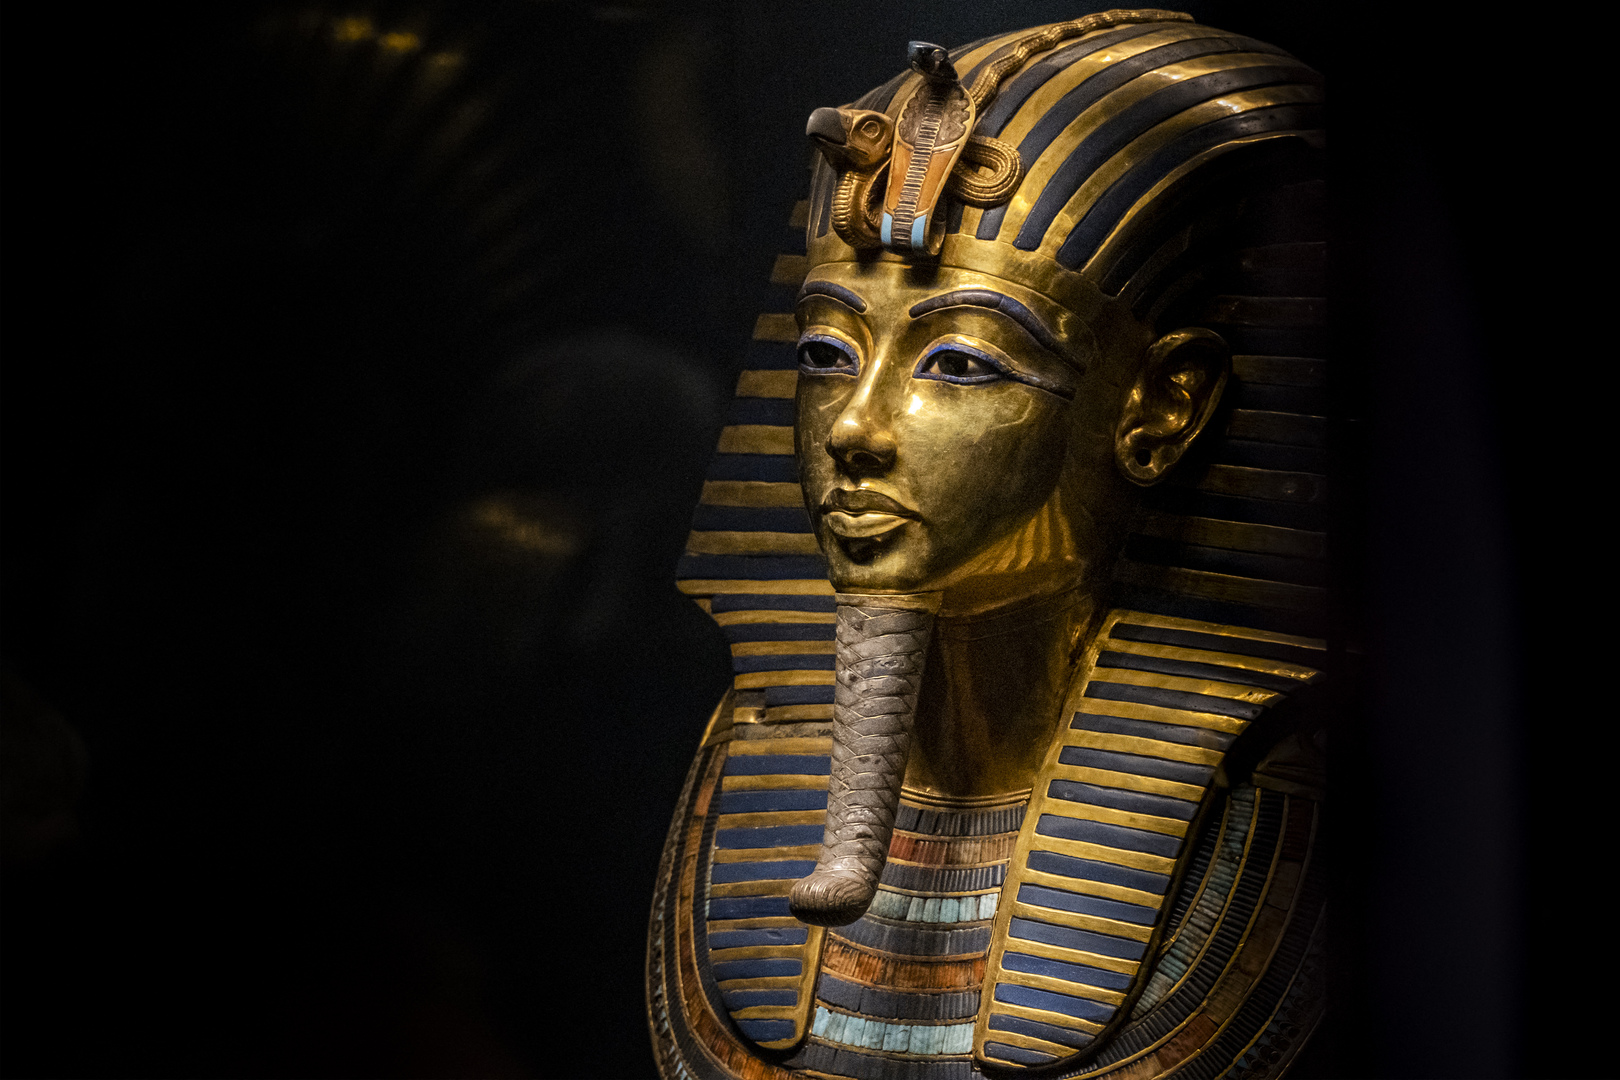 ما المكتوب على القناع الذهبي للملك المصري توت عنخ آمون؟ وما حقيقة ما يتم تداوله على مواقع التواصل؟